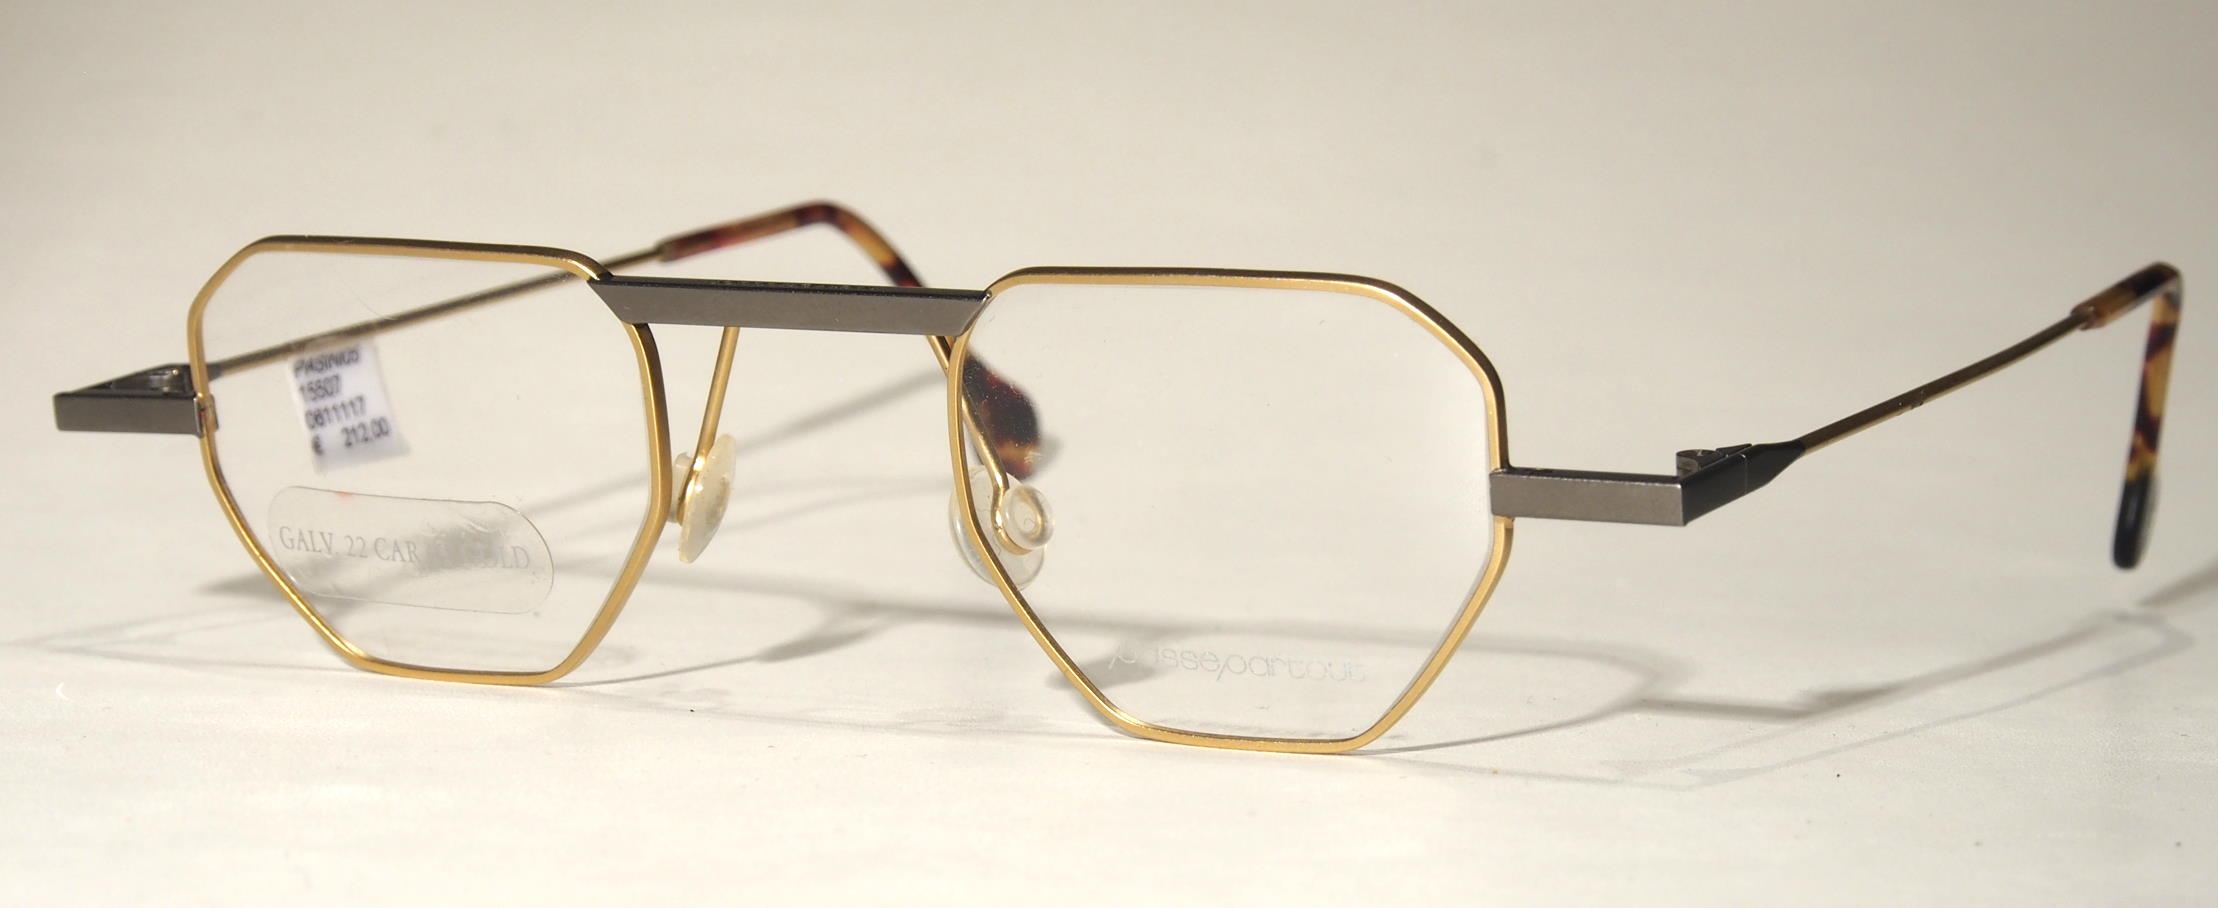 Original Vintagebrille der 90er Jahre, Passepartout 05 E 1507